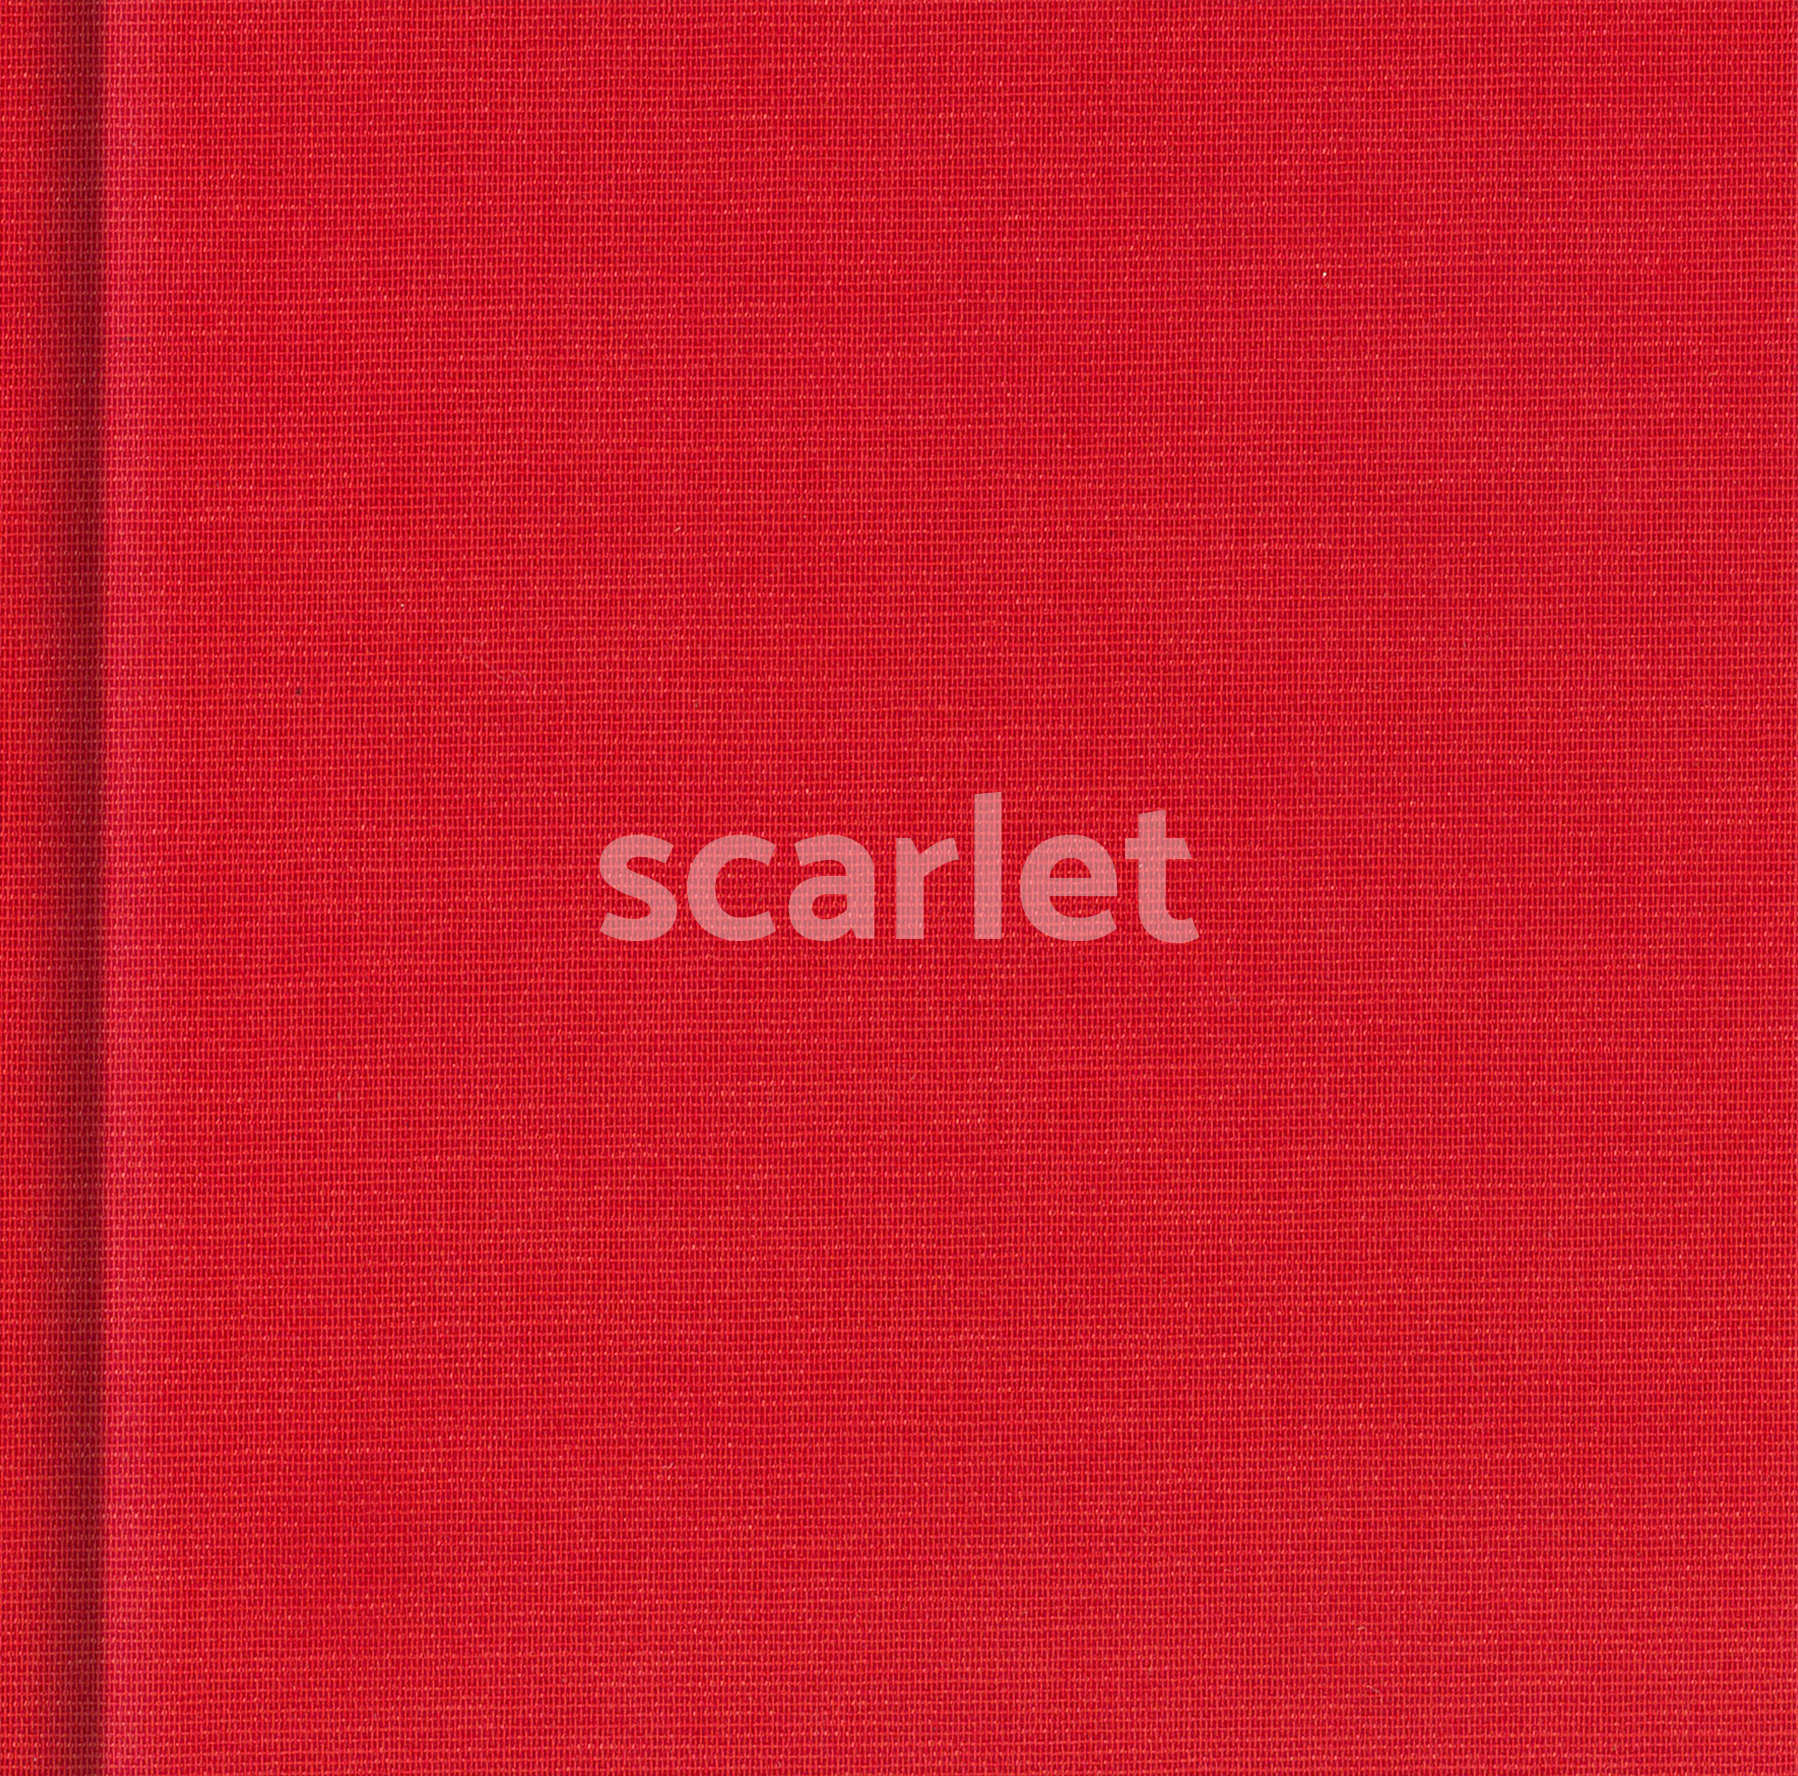 scarlet